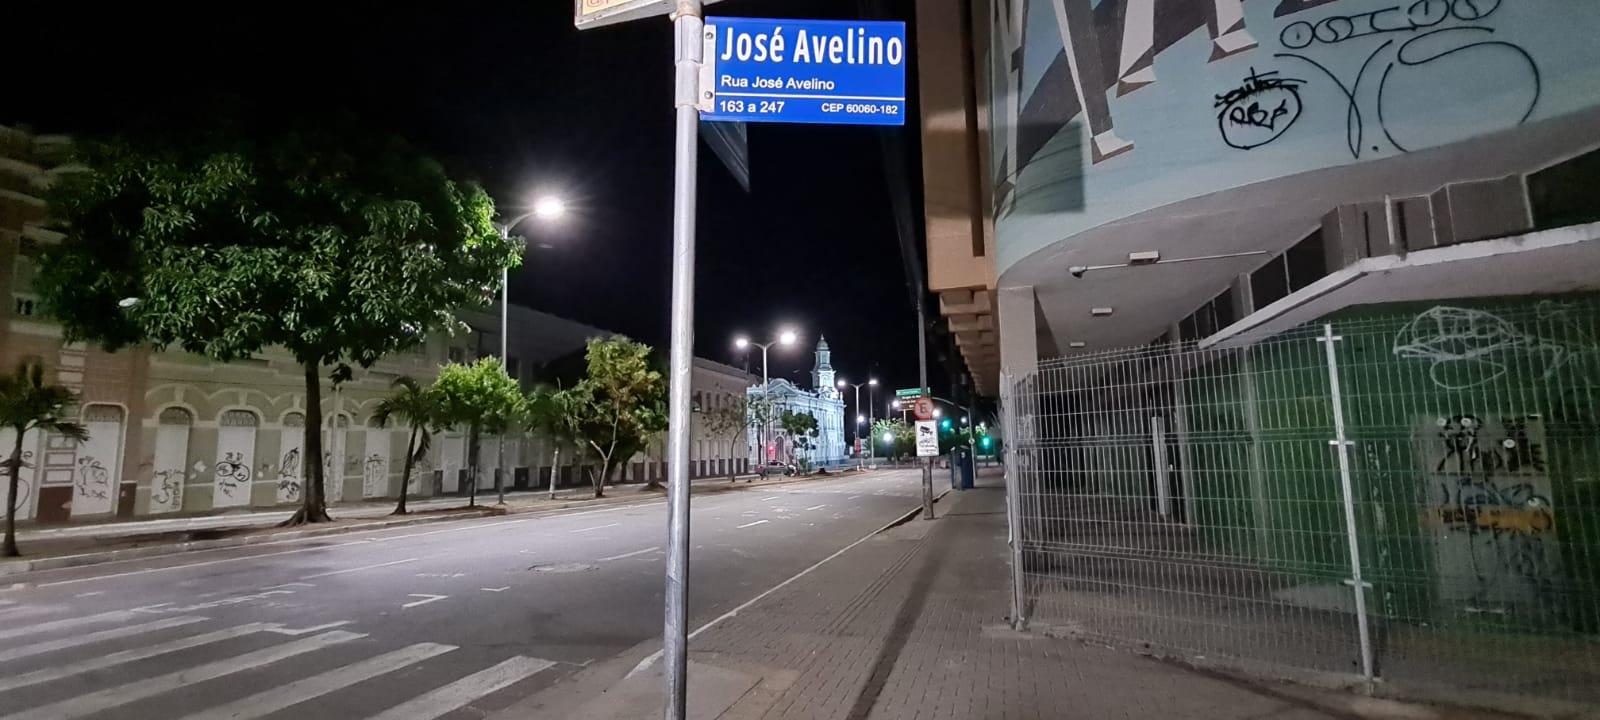 Feira da José Avelino, Centro de Fortaleza, no Ceará